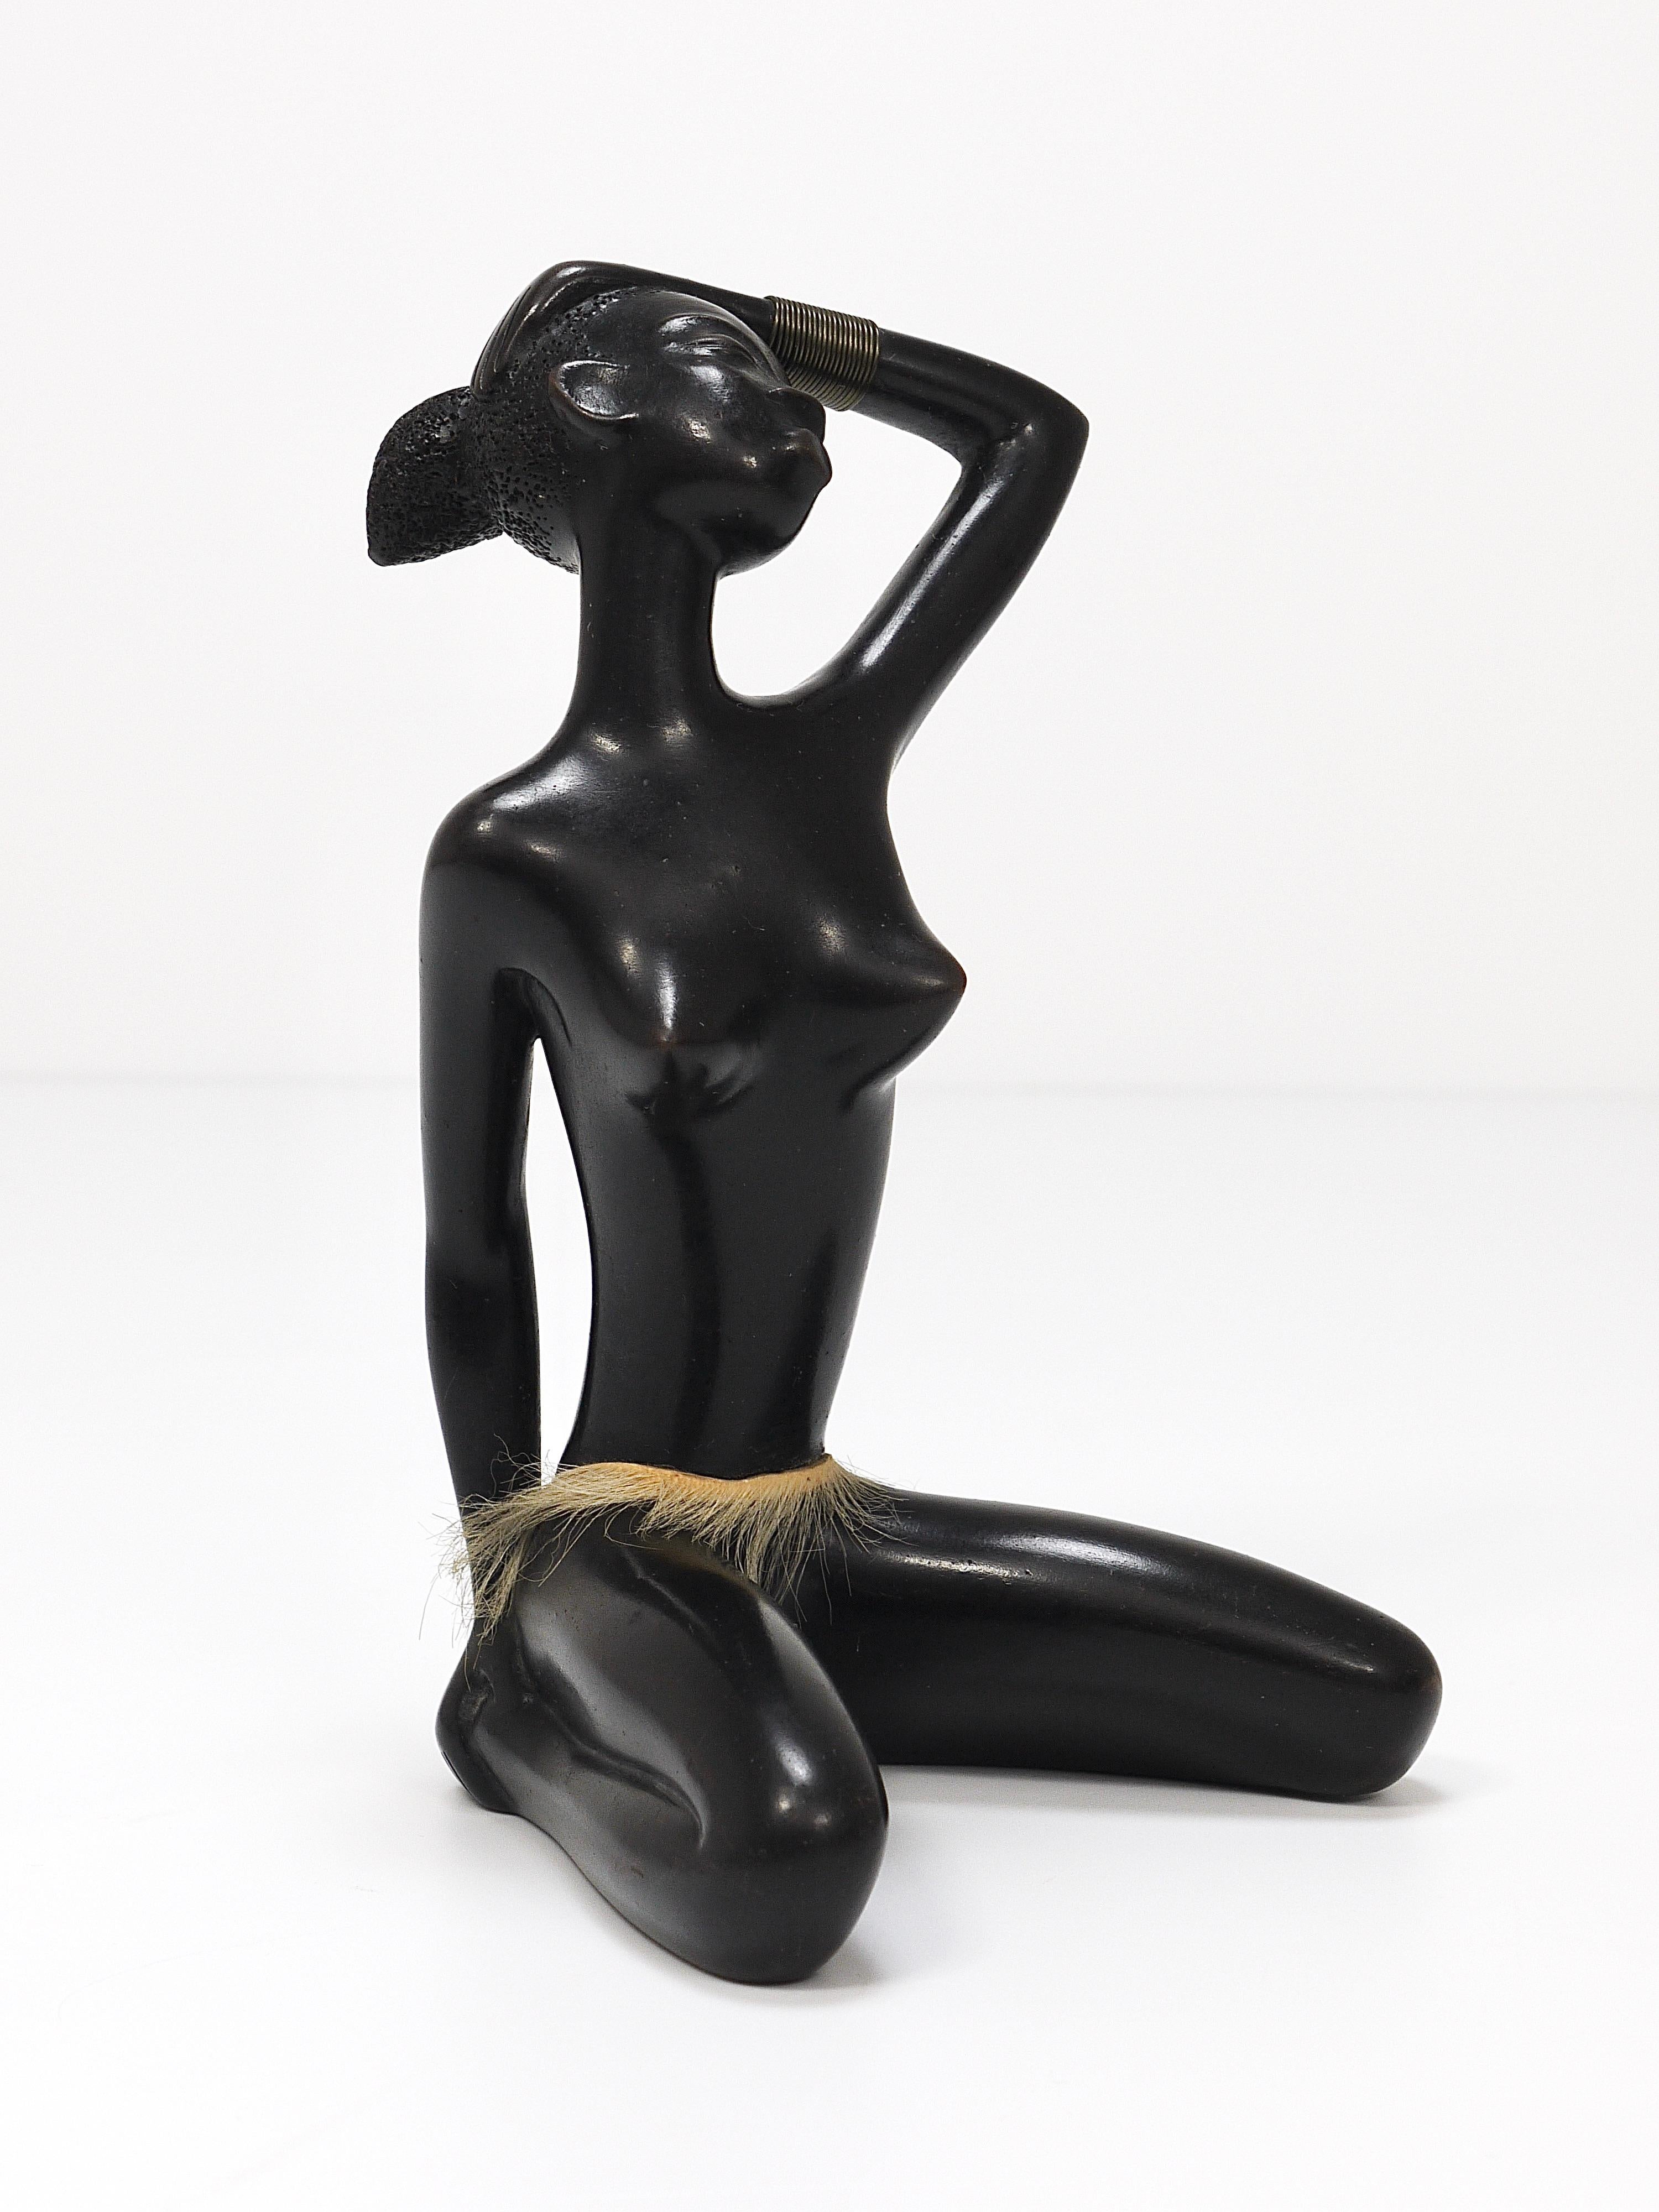 Preciosa y decorativa escultura/ figurita, con todo lujo de detalles, vintage de los años 50, que representa a una mujer africana desnuda, sentada, con brazalete de latón y falda. Diseñado y fabricado a mano por Leopold Anzengruber en Viena,